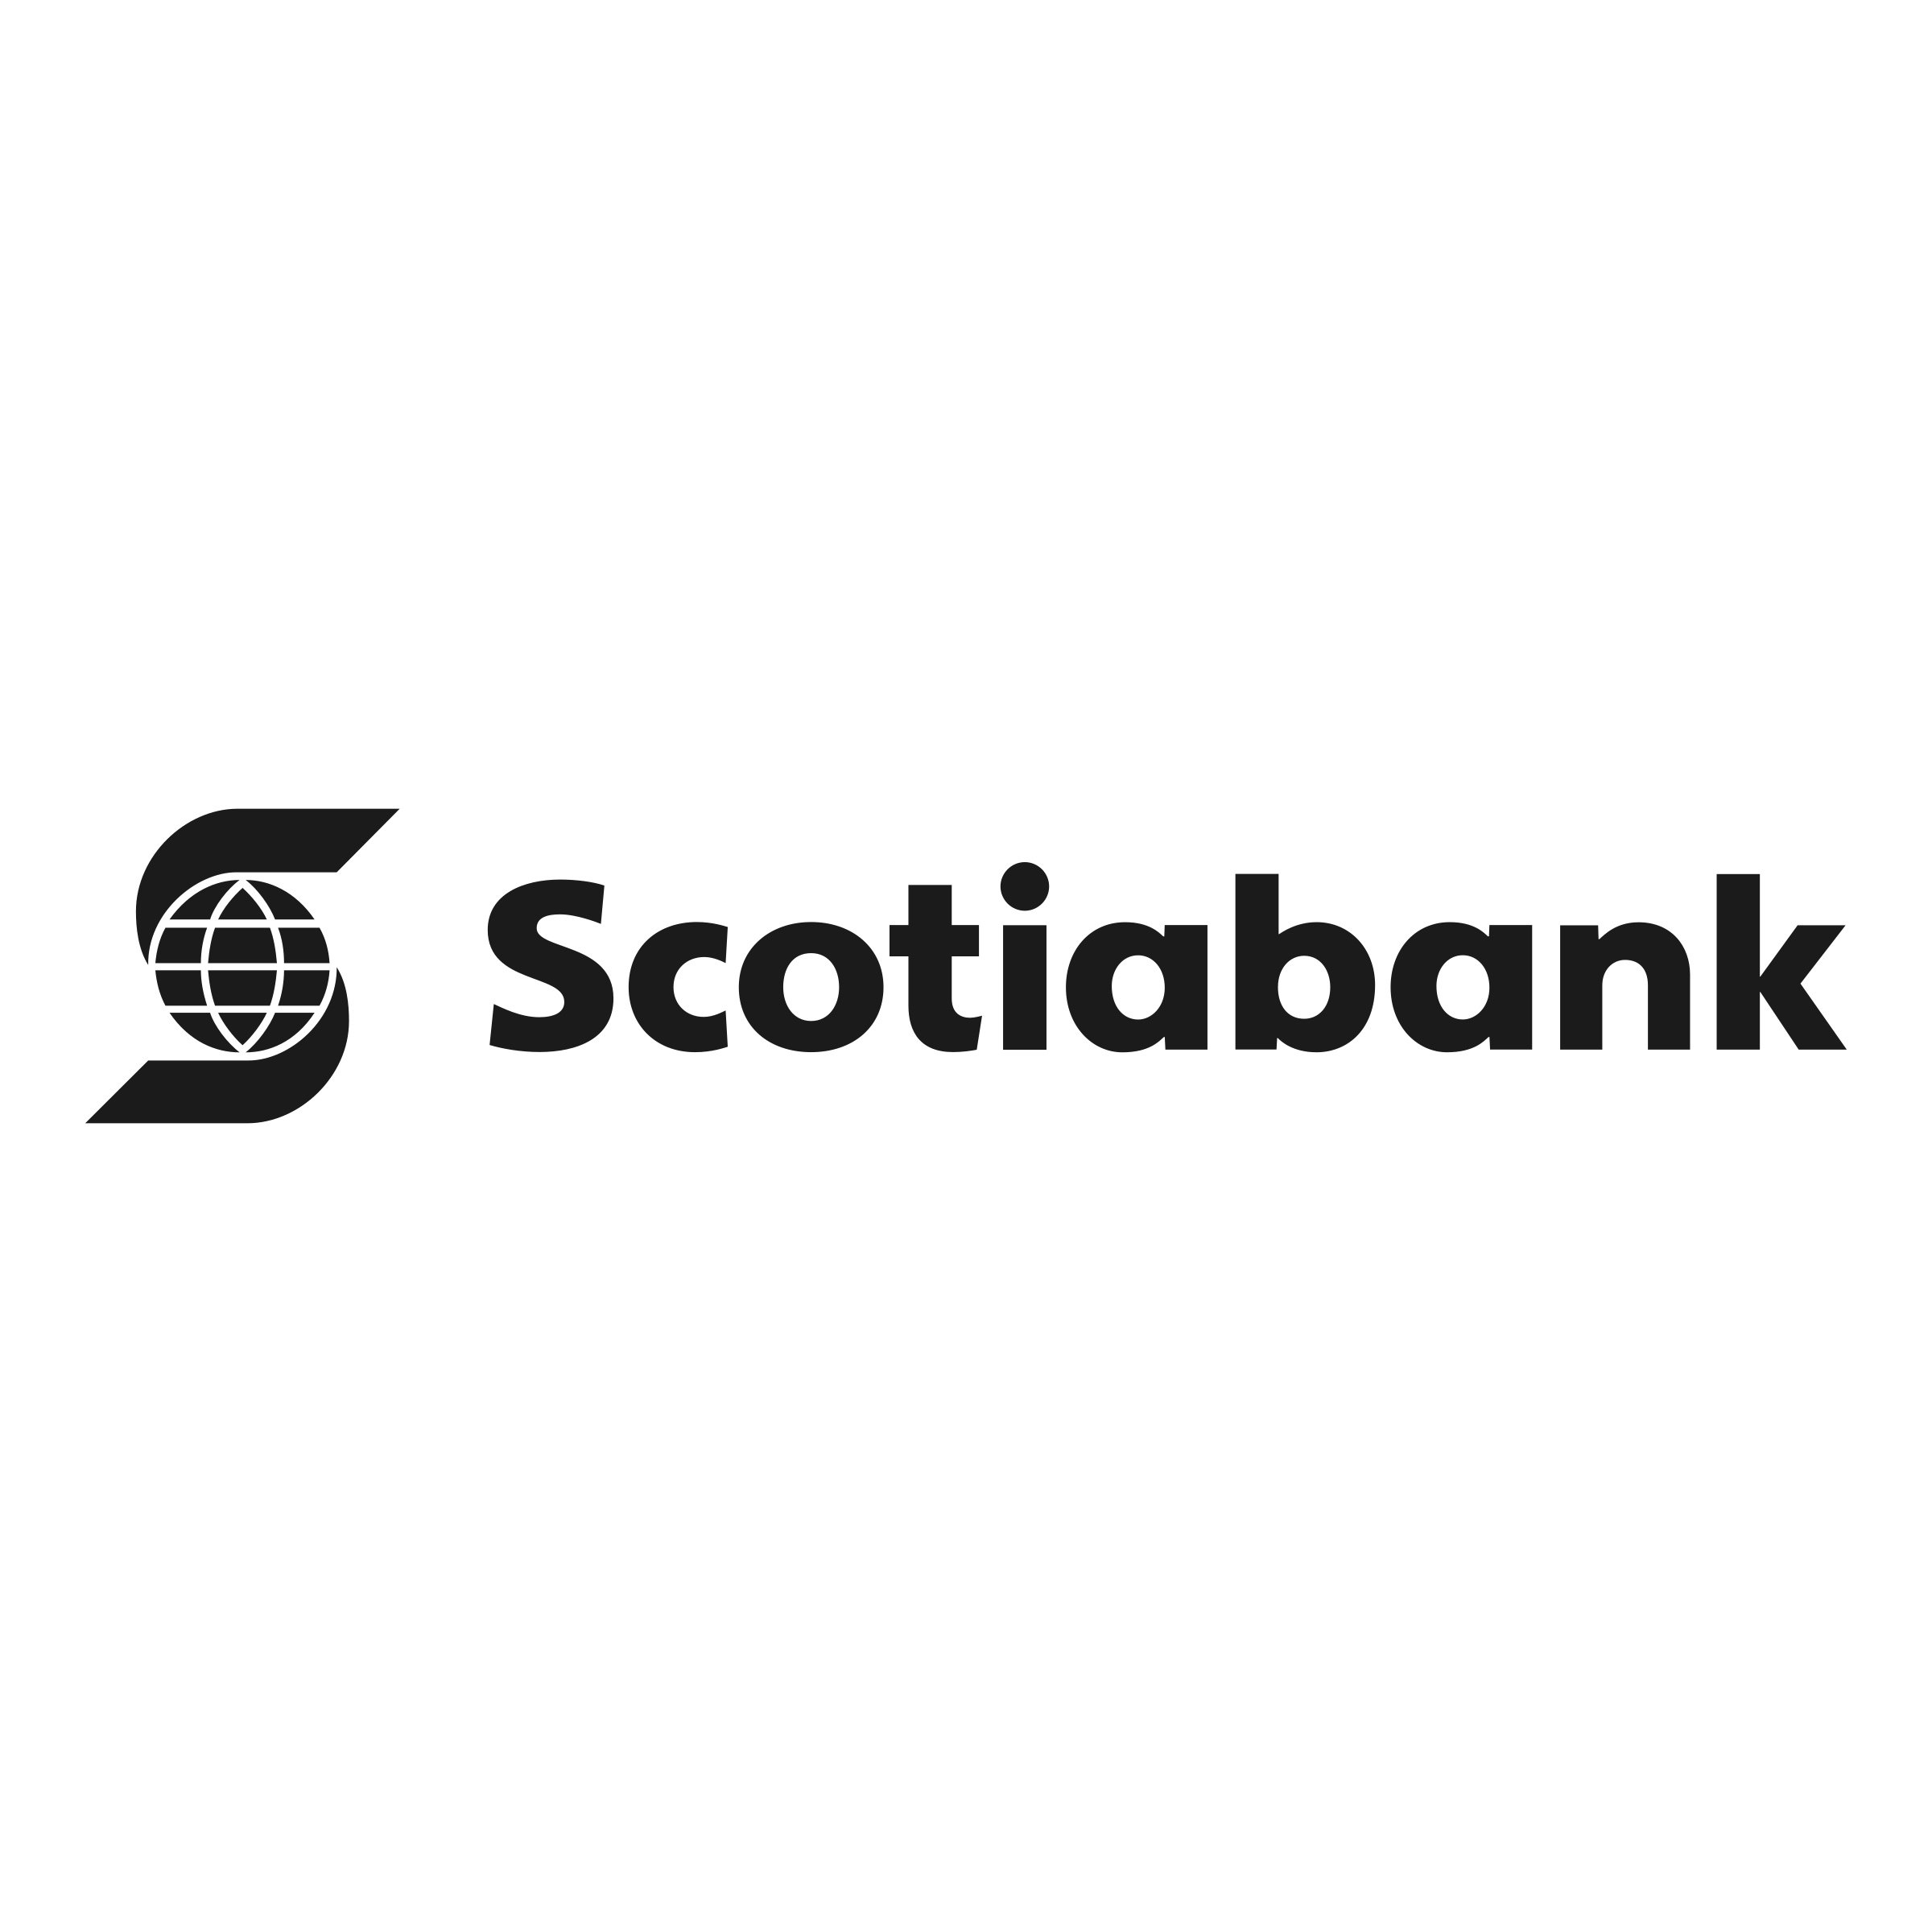 scotiabank-3-logo-png-transparent.jpg